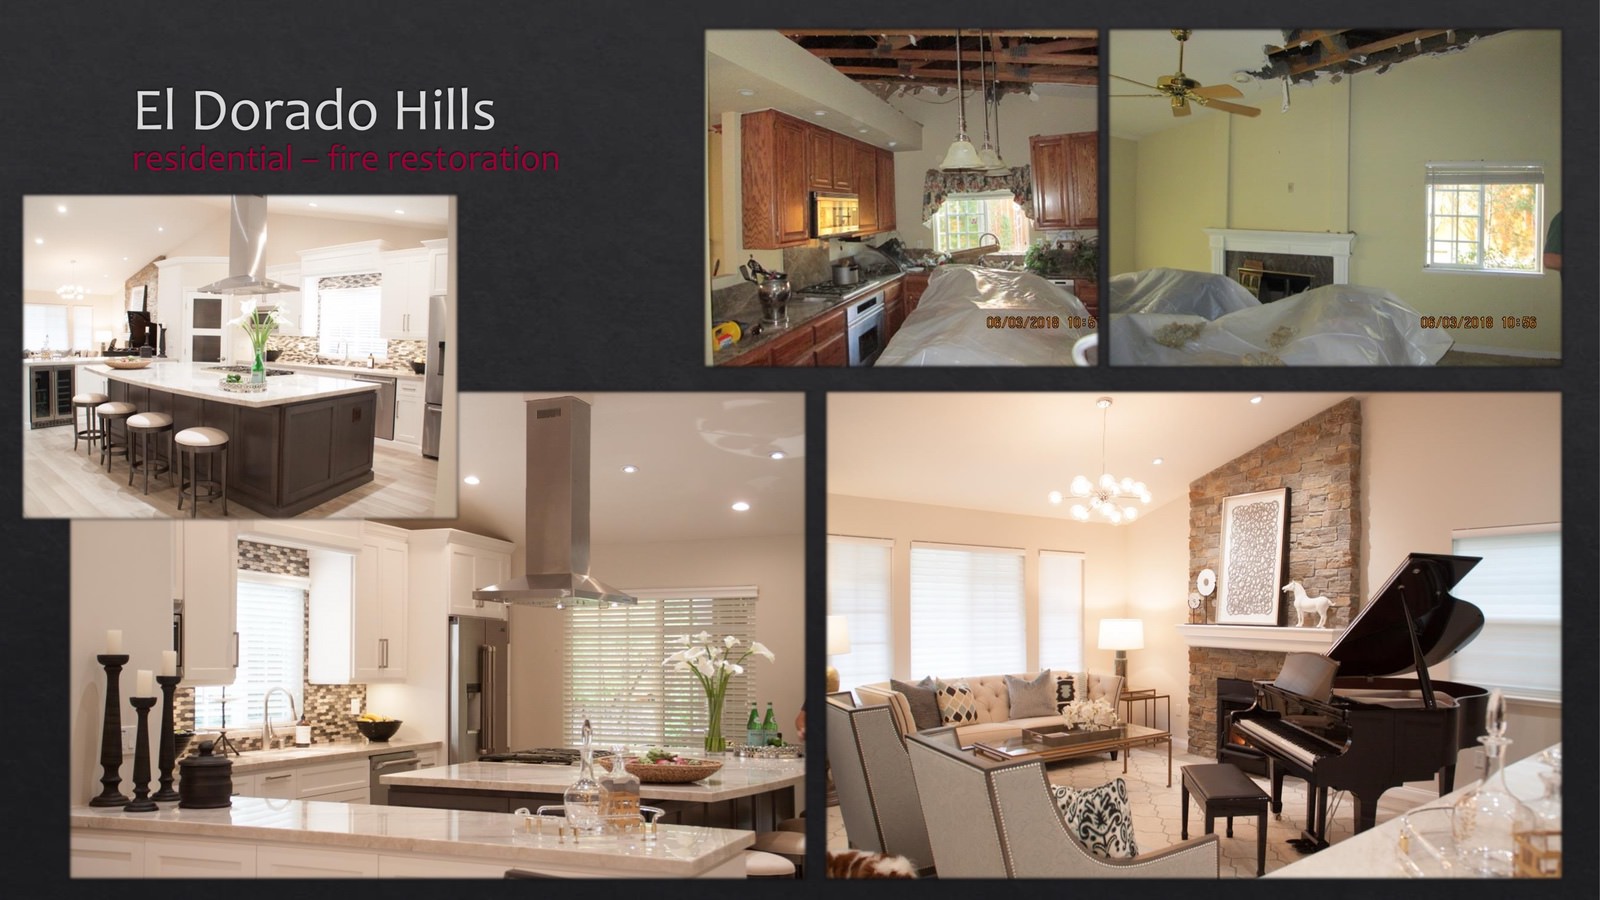 El Dorado Hills Residential fire restoration - living room and kitchen - lightbox